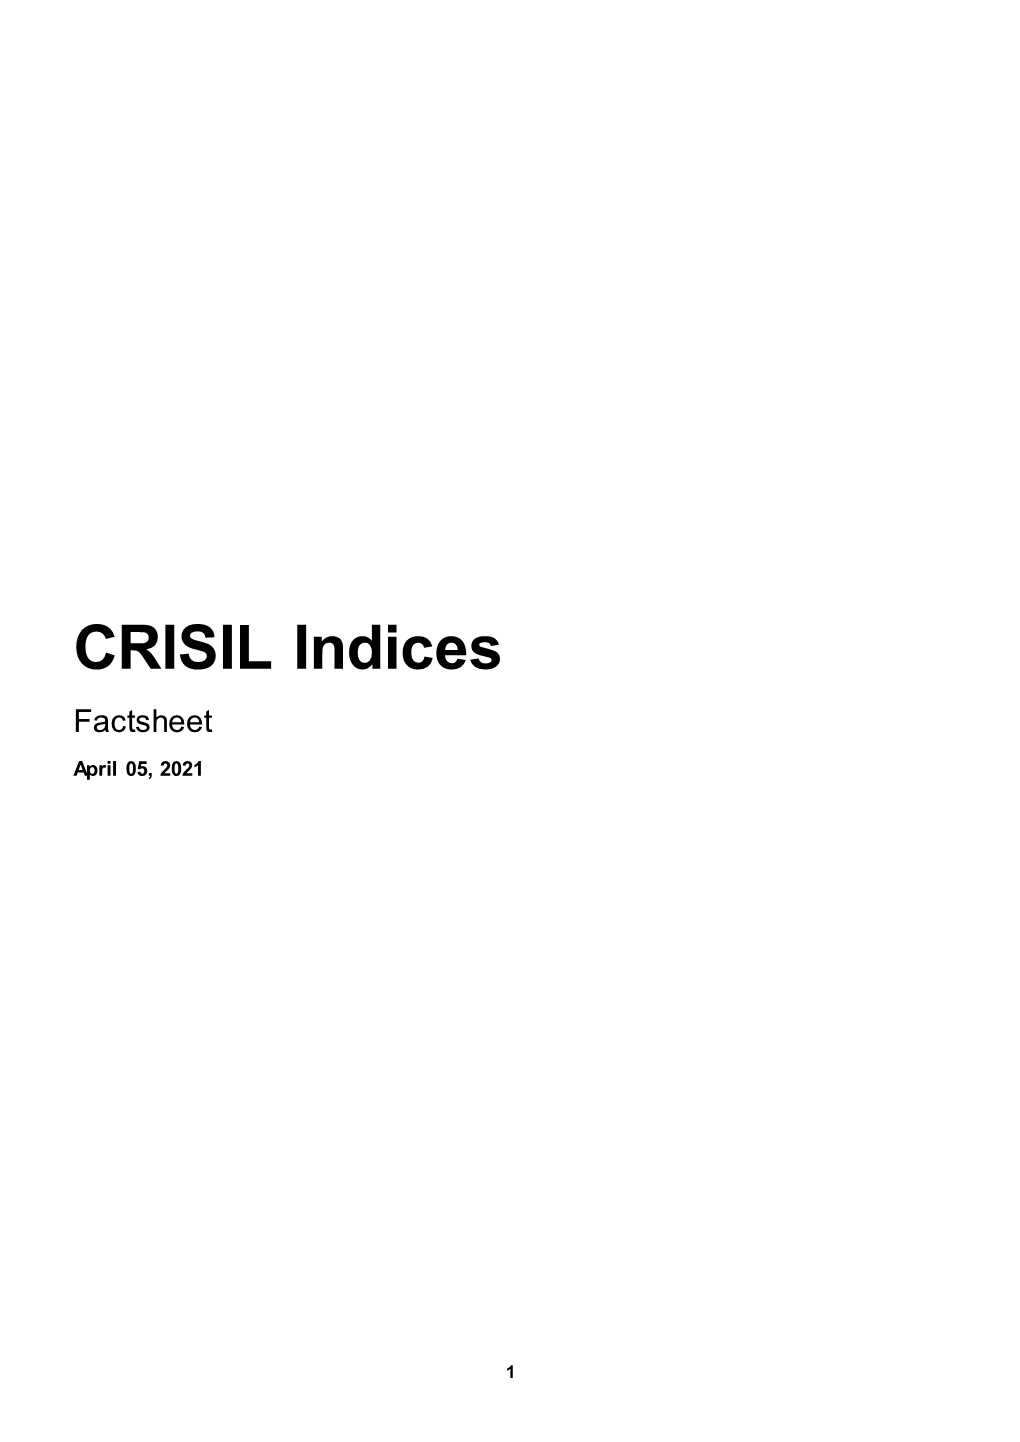 CRISIL Indices Factsheet April 05 2021